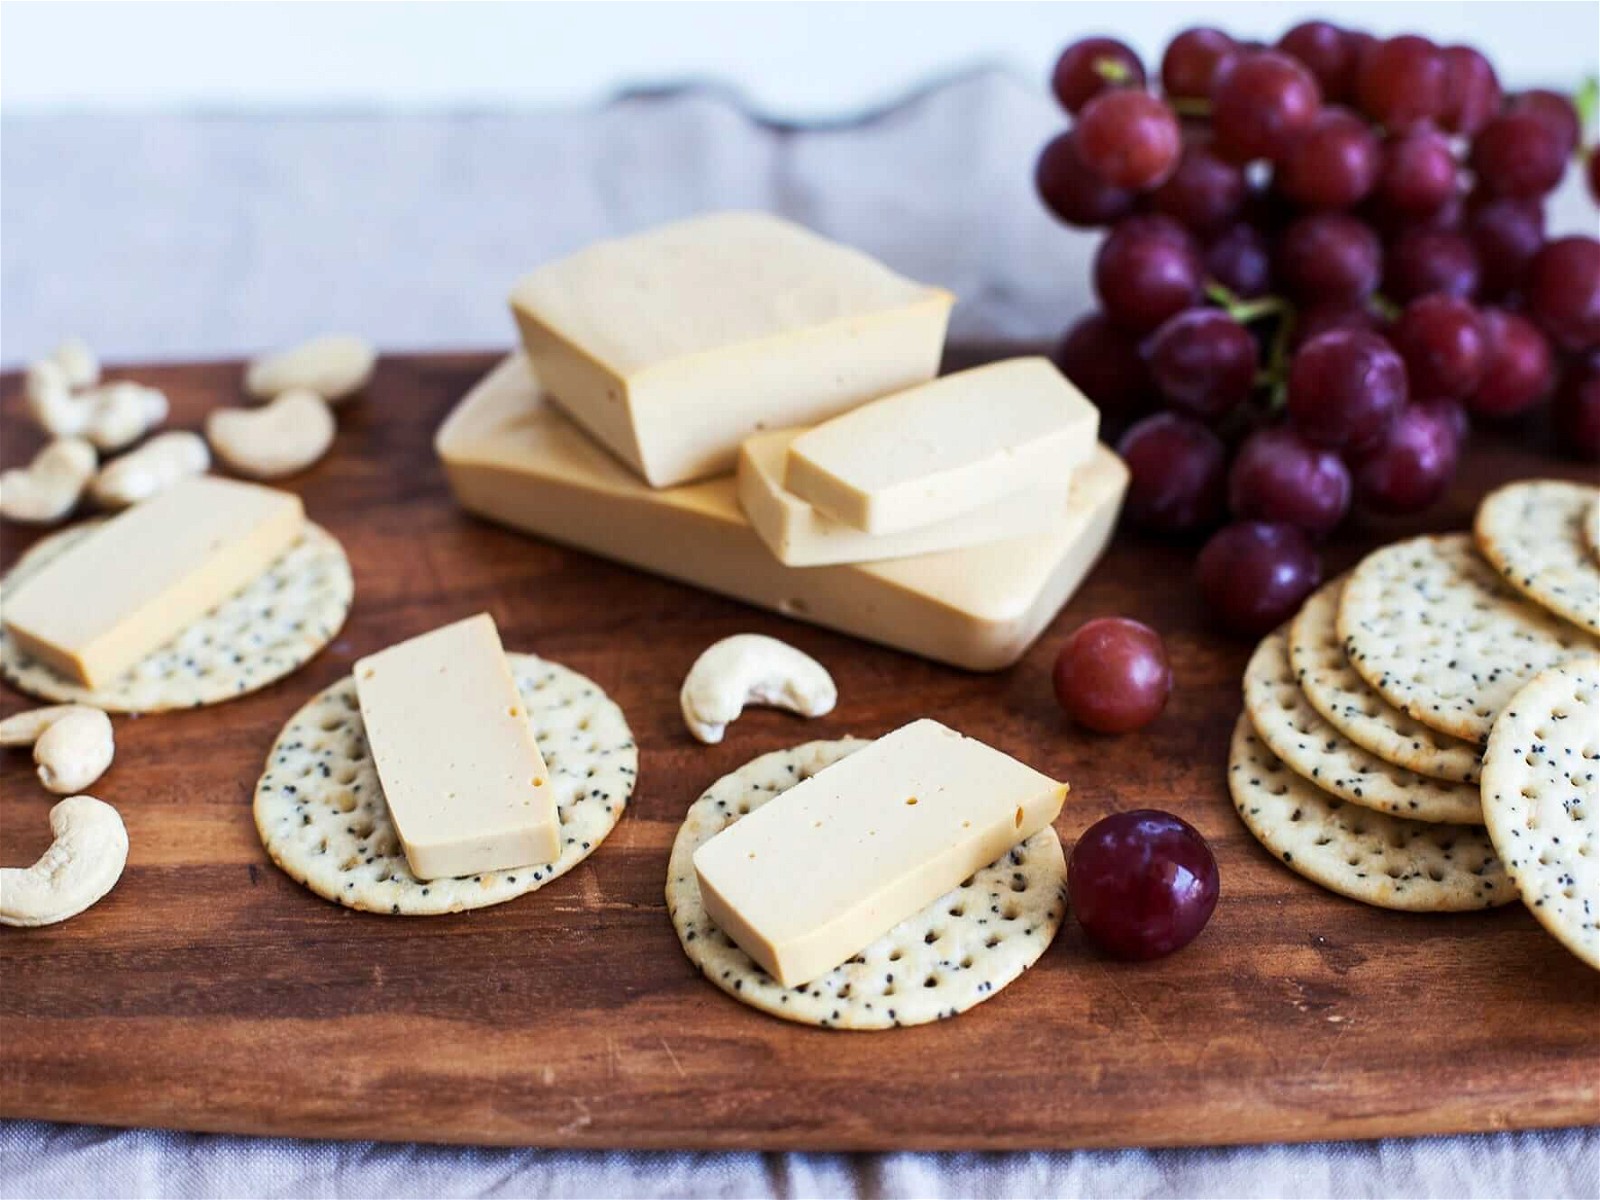 Comment faire un fromage vegan : ingrédients, recette